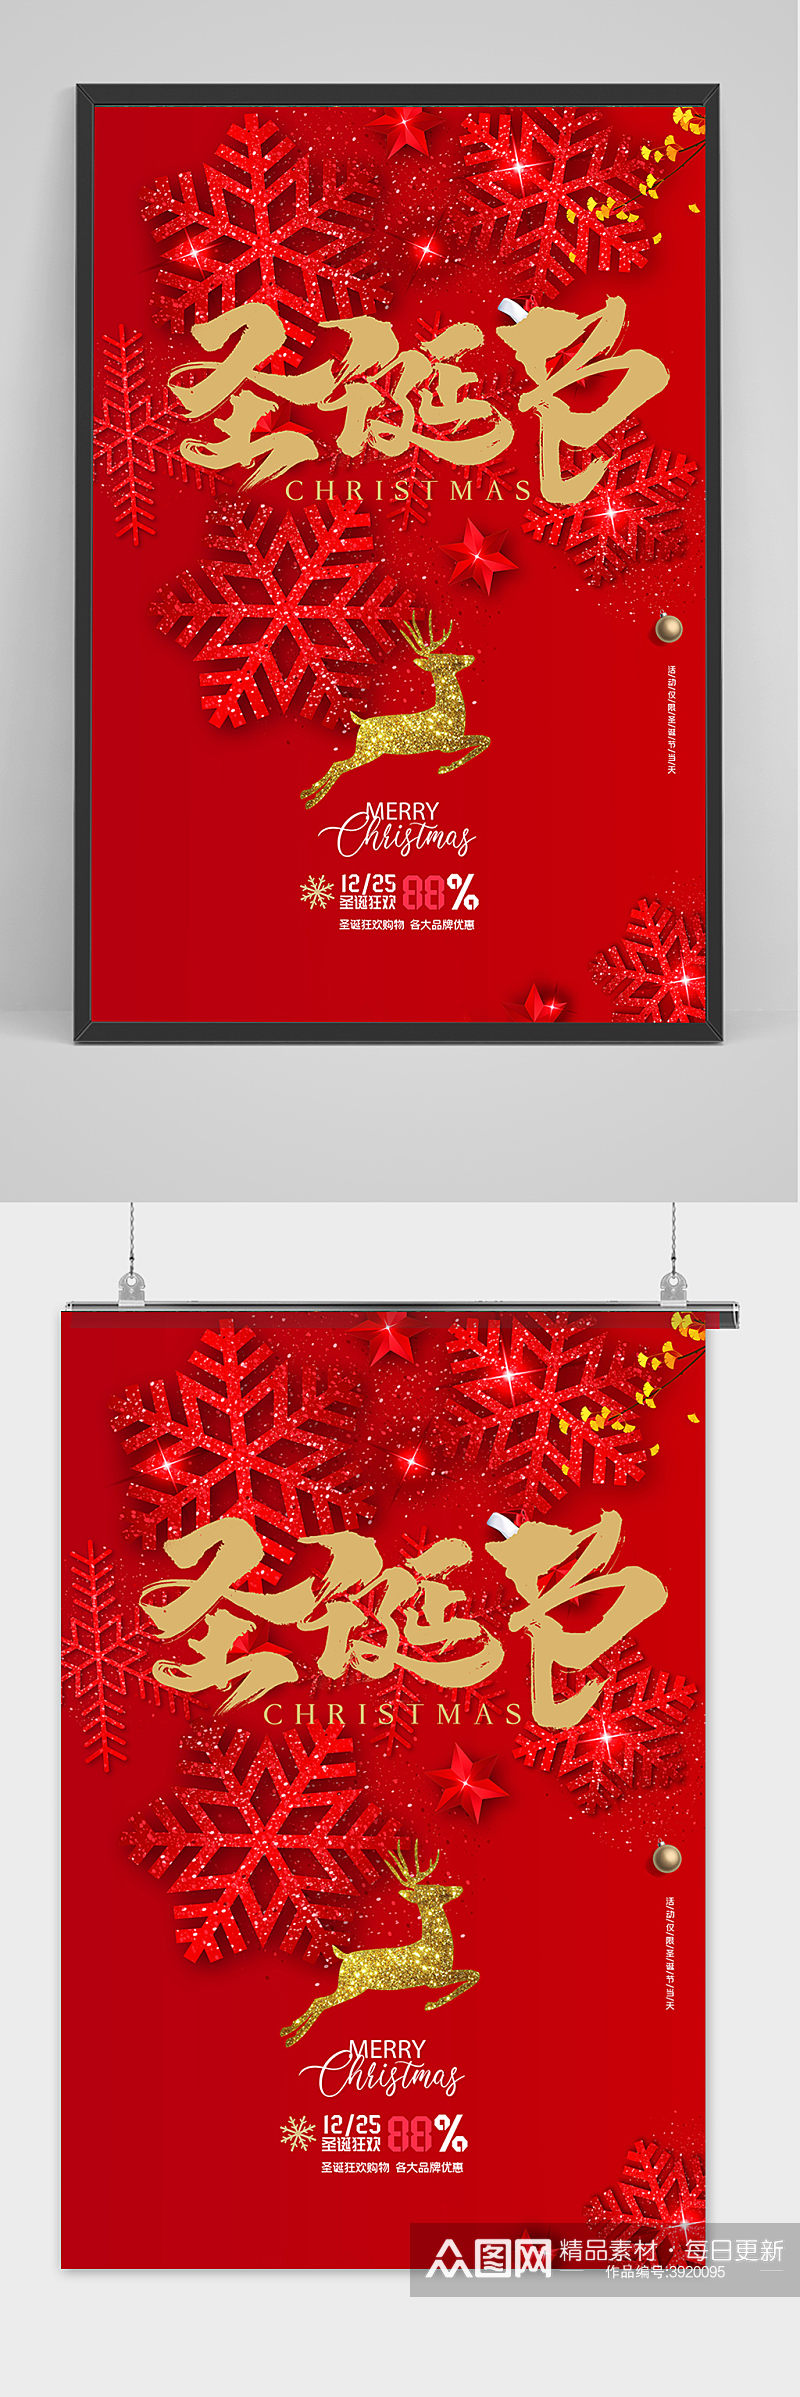 红色商场通用圣诞节节日促销海报素材